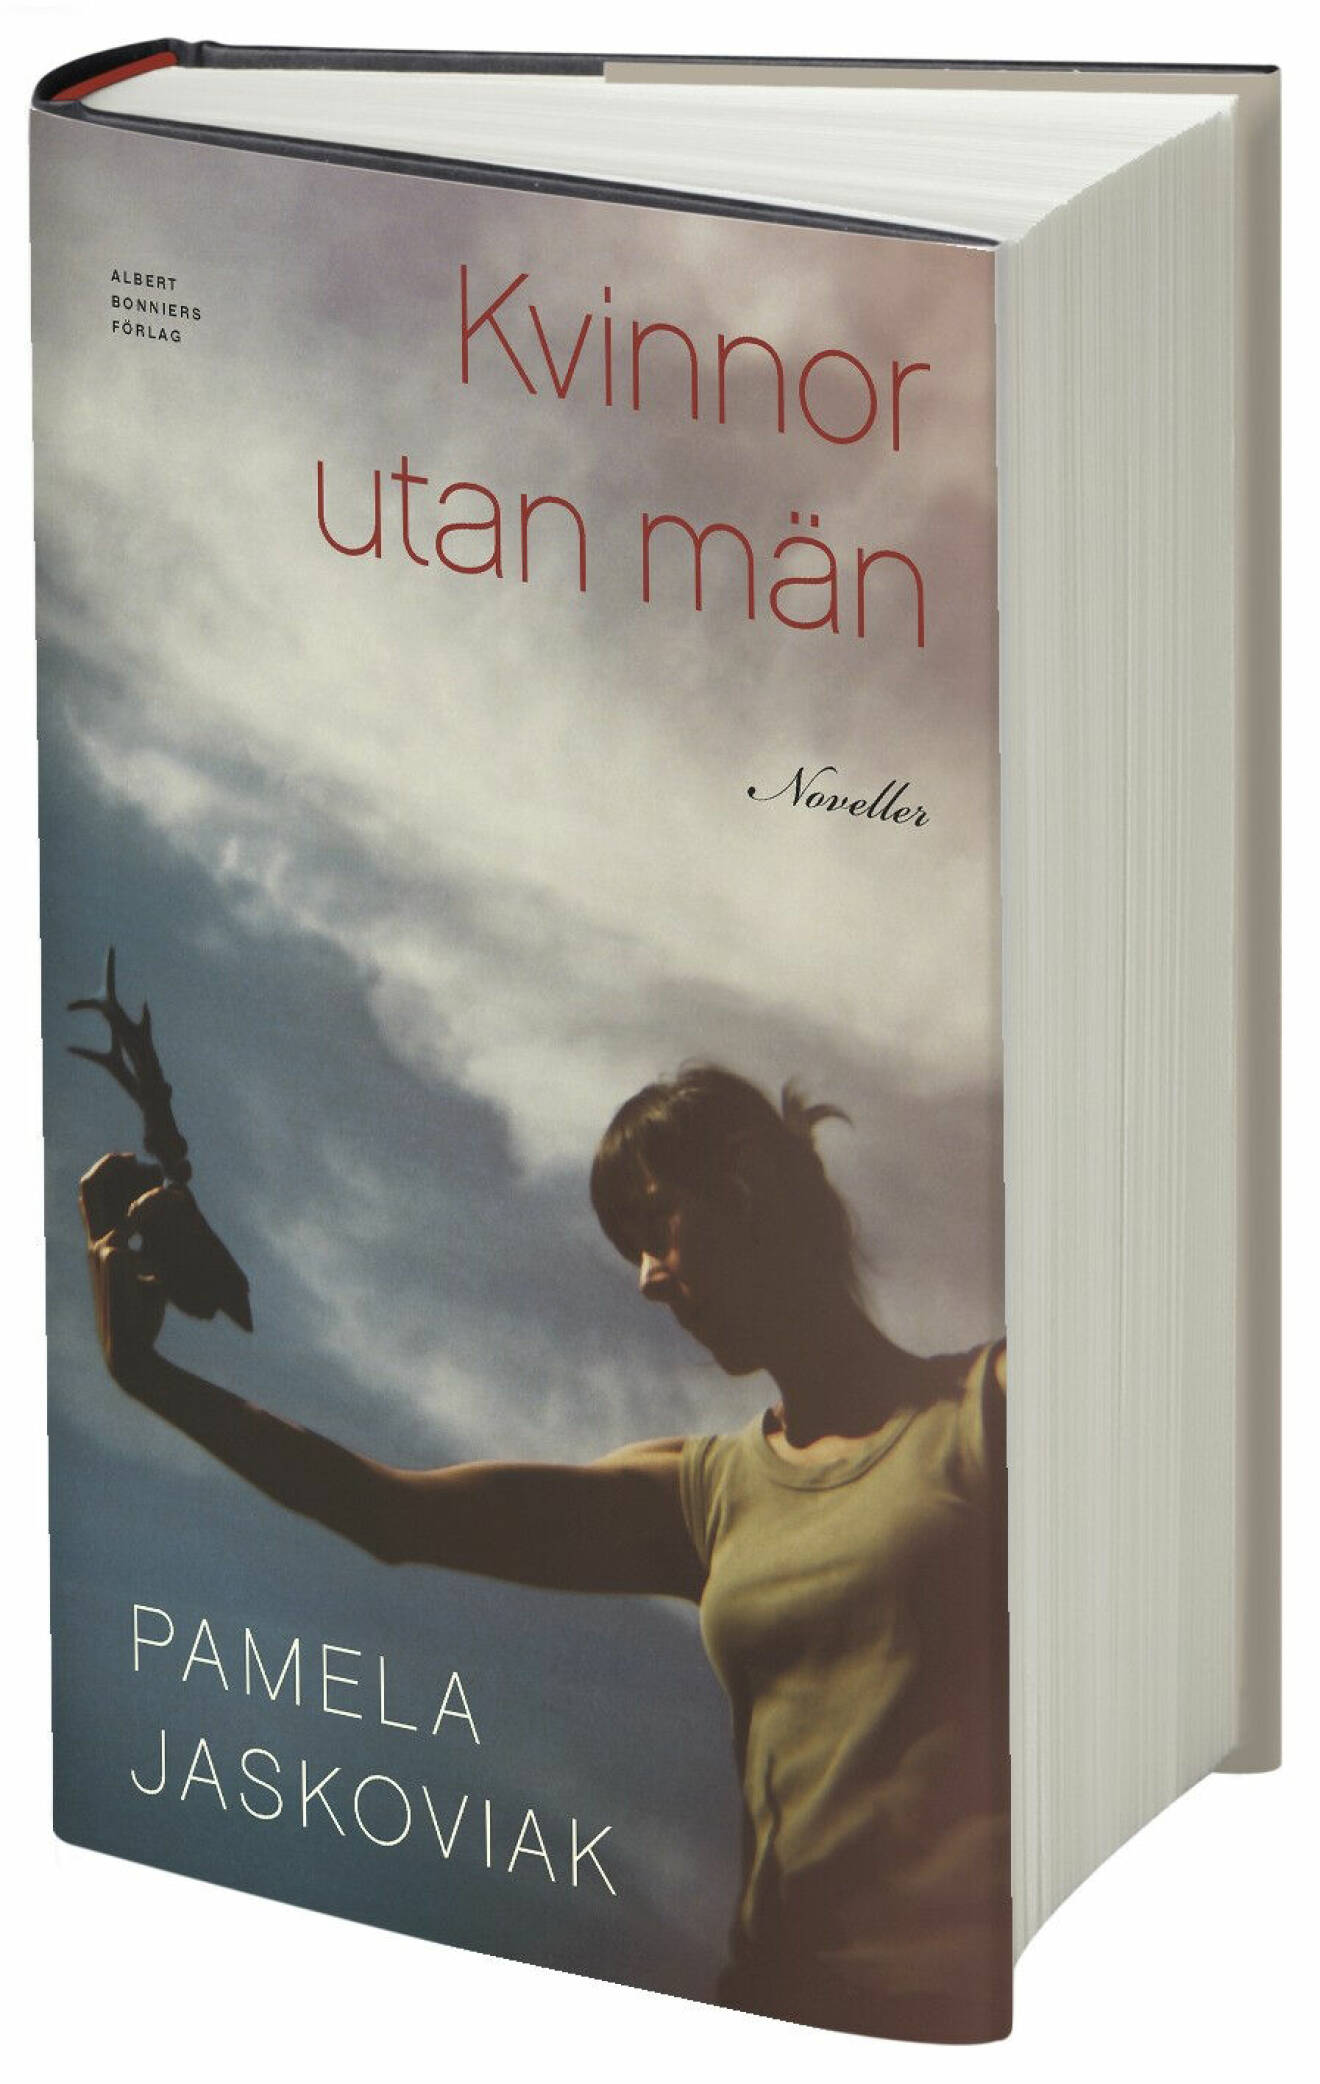 Kvinnor utan män av Pamela Jaskoviak.